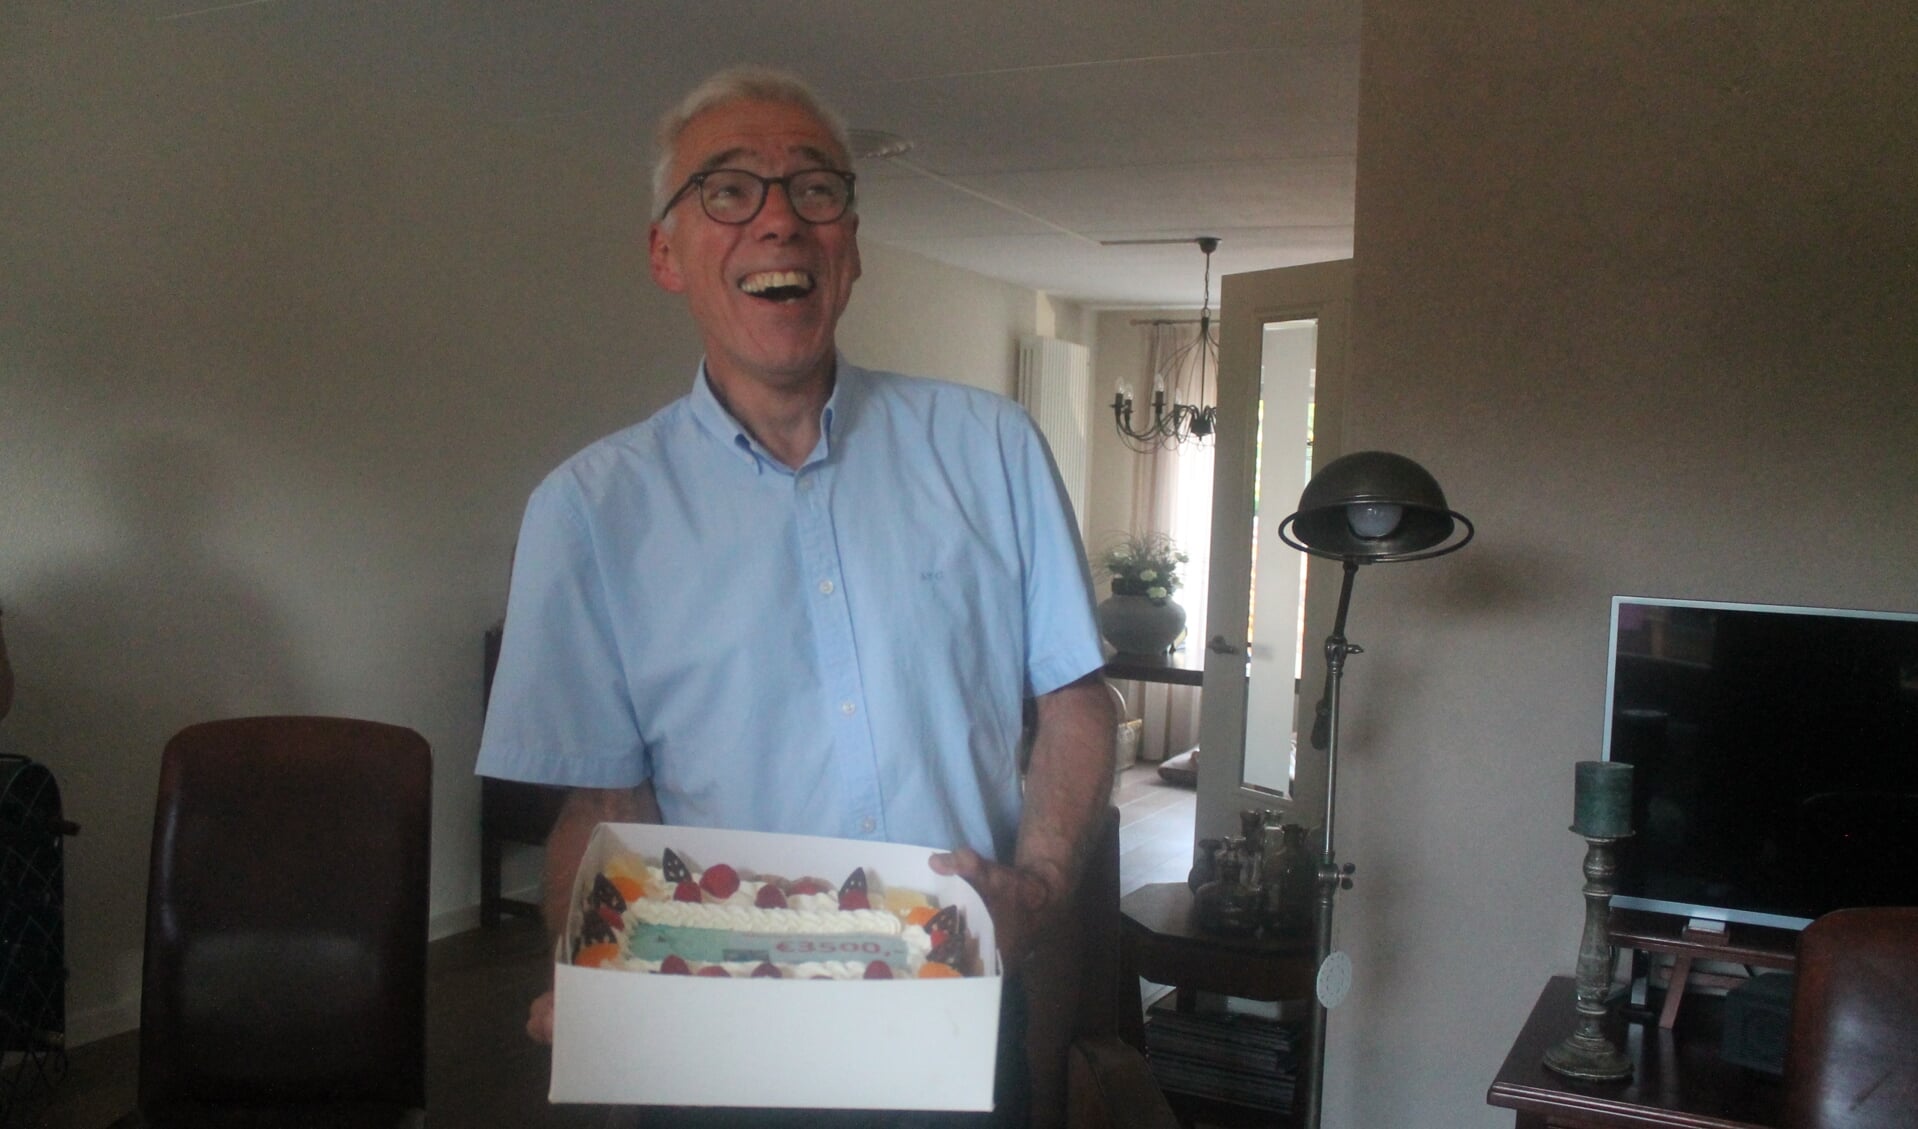 De Kom en Zie commissie vond de bekendmaking van het bijeengebrachte bedrag een feestelijk moment waard en overhandigde Jan Heijns een taart met daarop het bedrag: 3500 euro! 